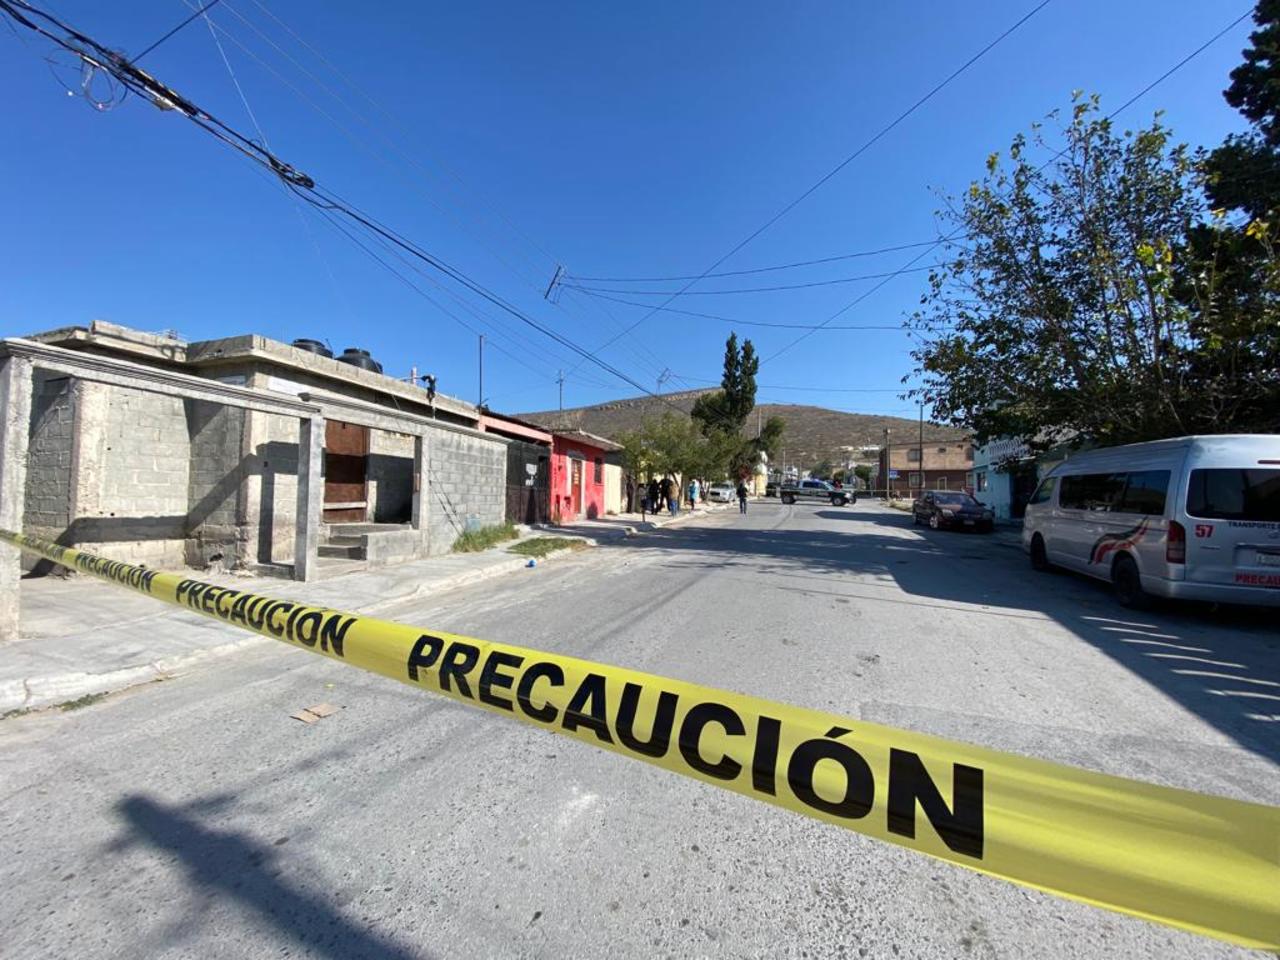 Fue alrededor de las nueve de la mañana que se emitió el reporte al sistema de emergencias 911, de una persona sin vida en la calle Sierra Los Pinos colonia Fresnos en Saltillo.

